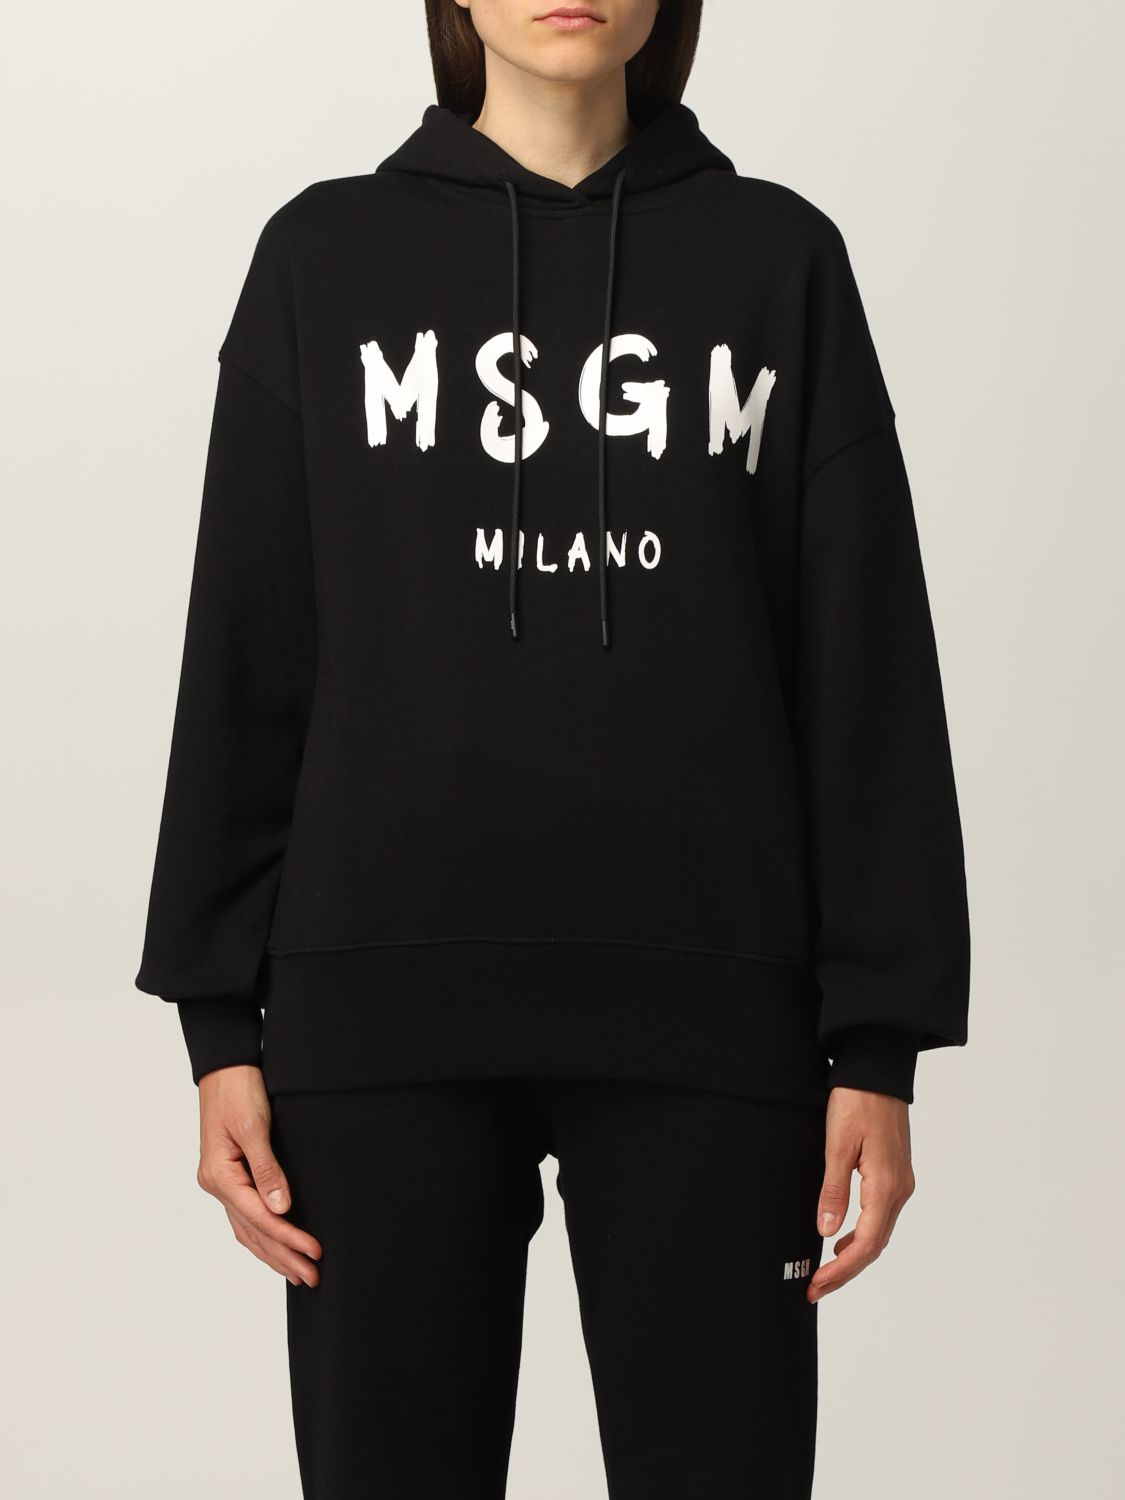 MSGM Luxury Fashion Womens Sweatshirt Summer 